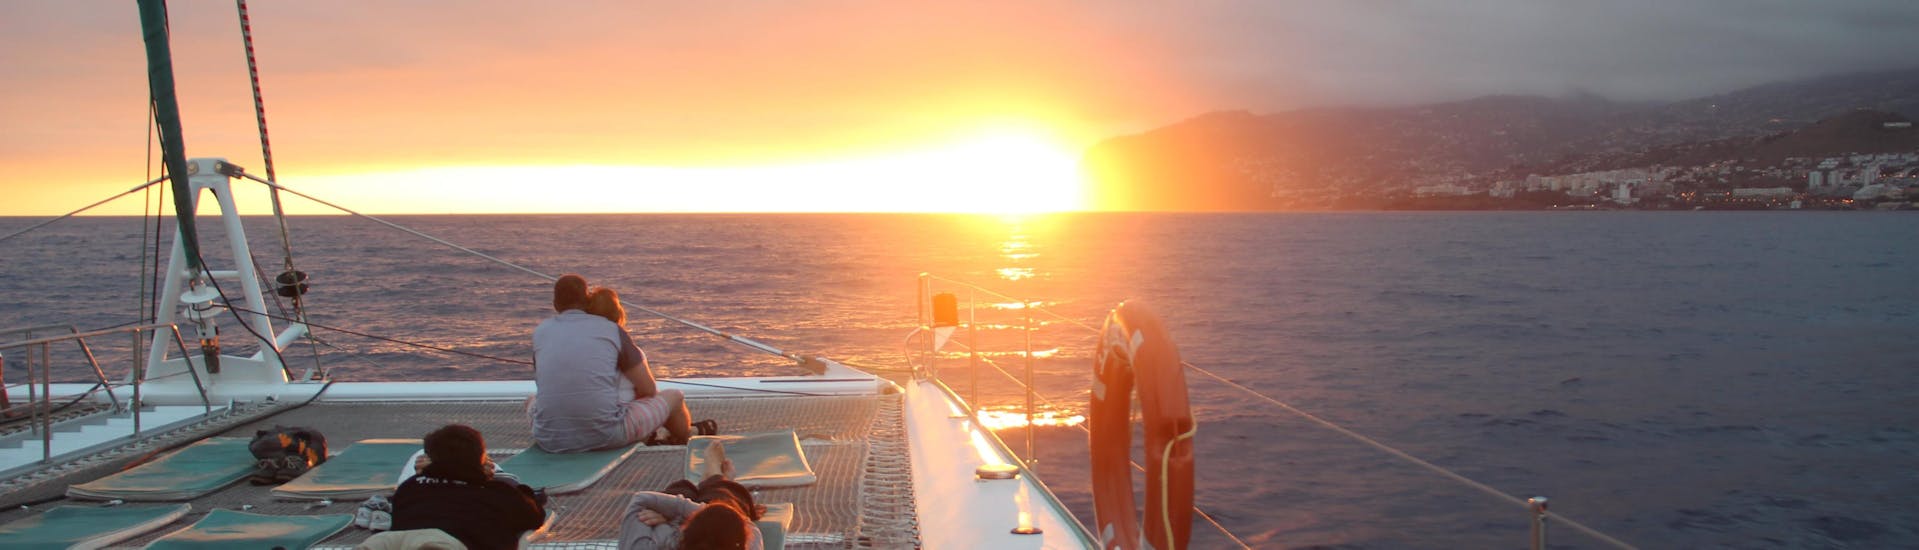 Balade en catamaran Funchal avec Baignade & Observation de la faune.